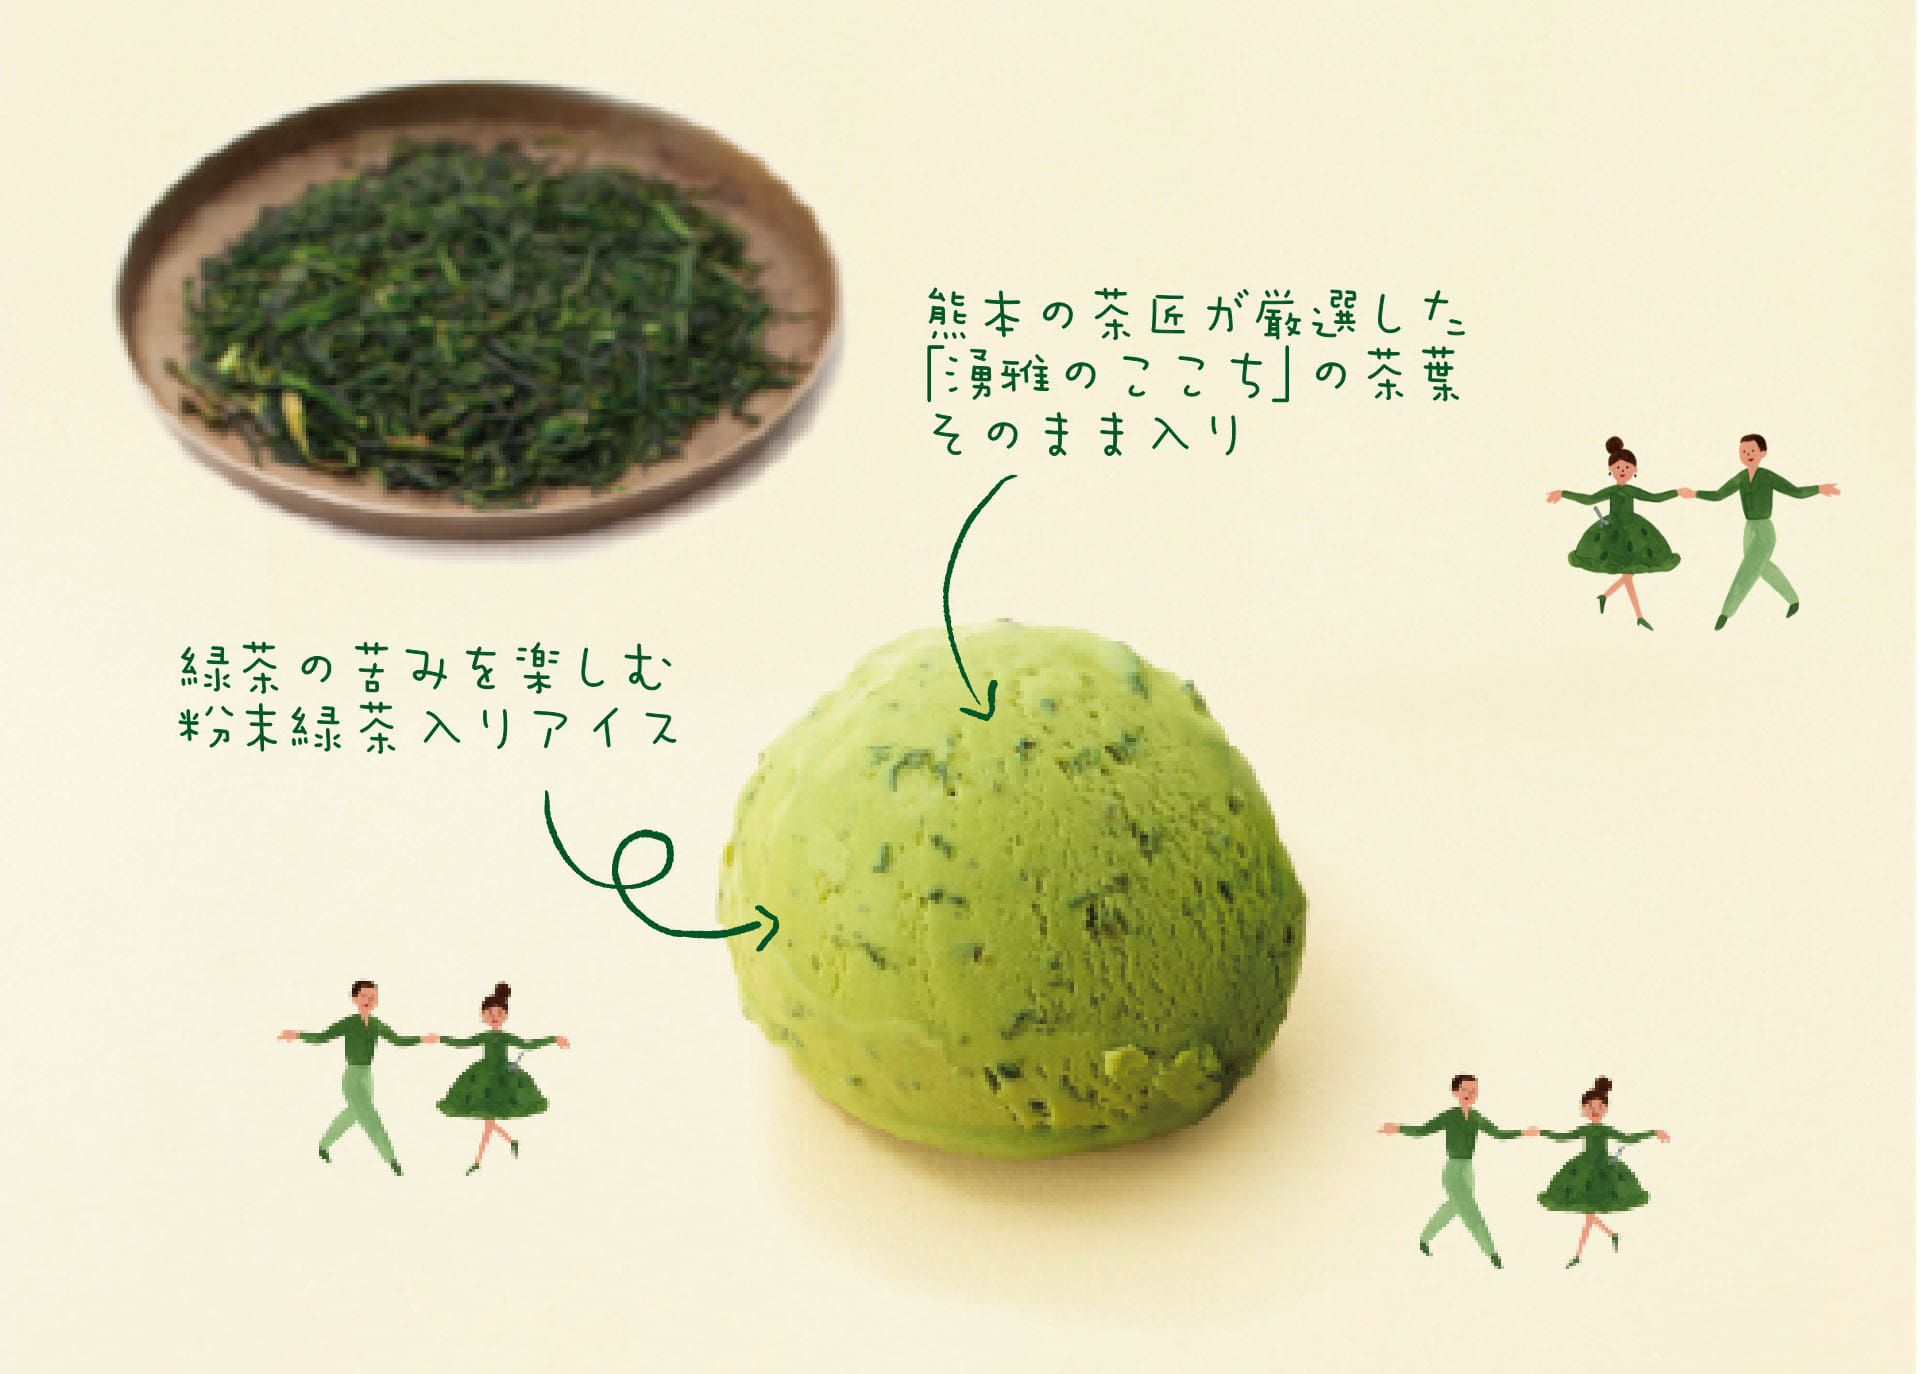 熊本県産最高級茶葉 優雅のここち使用 つぶつぶ茶葉入りアイス 茶茶茶 CHABA+ 特徴 熊本の茶匠が厳選した「優雅のここち」の茶葉そのまま入り 緑茶の苦みを楽しむ粉末緑茶入りアイス